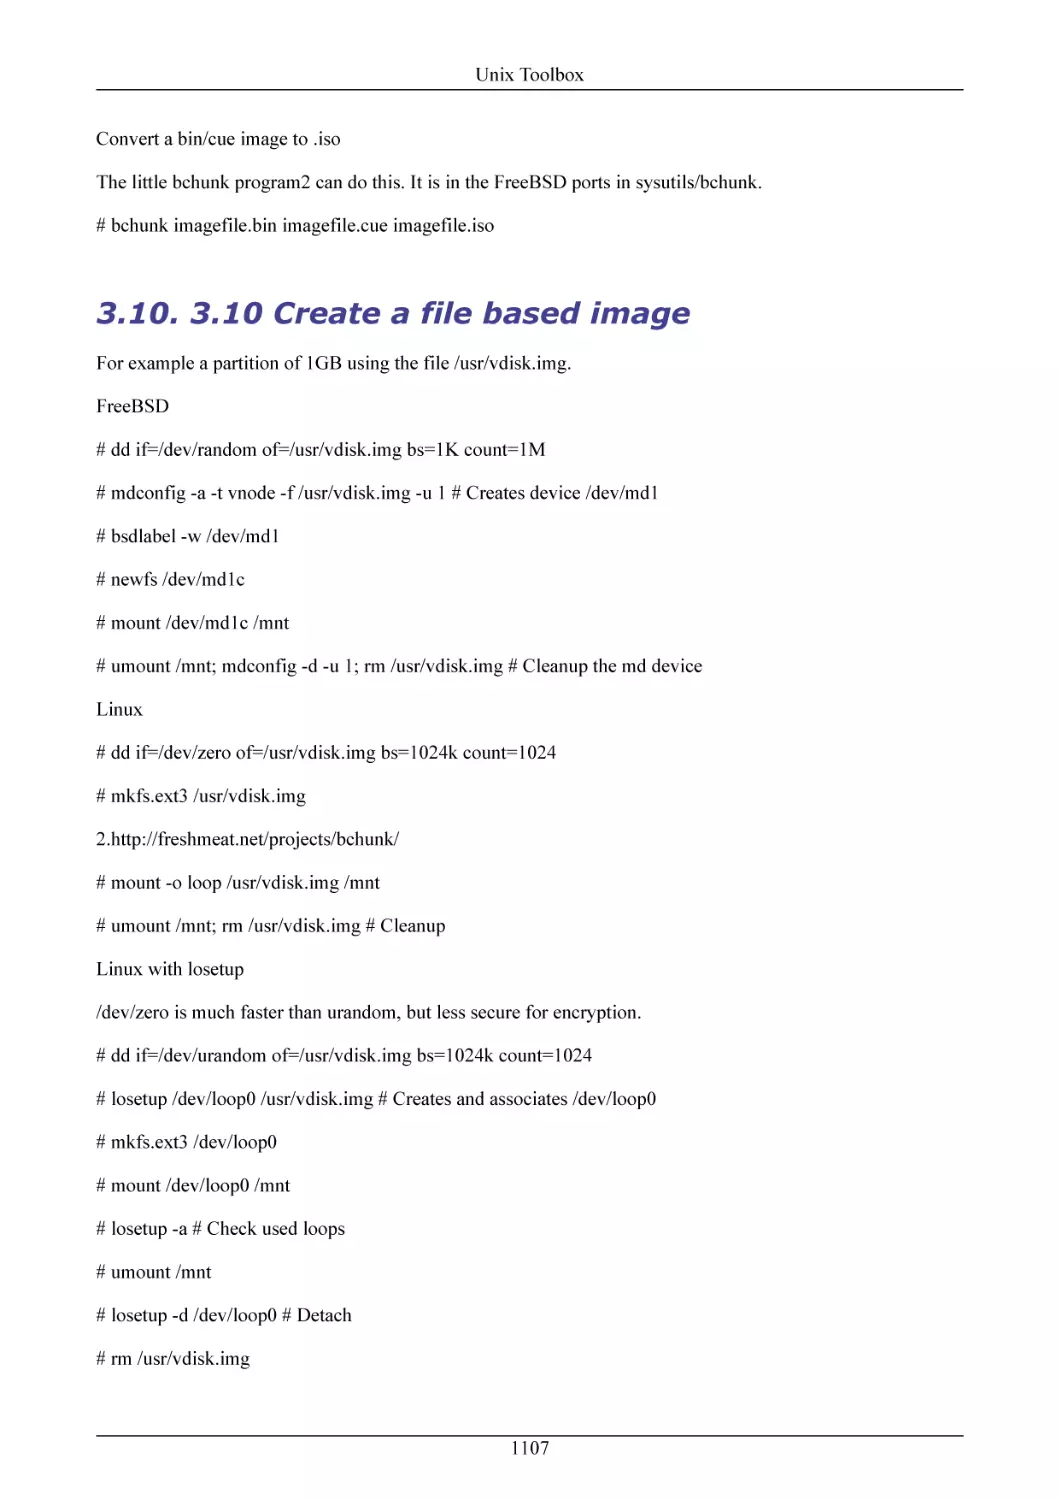 3.10 Create a file based image